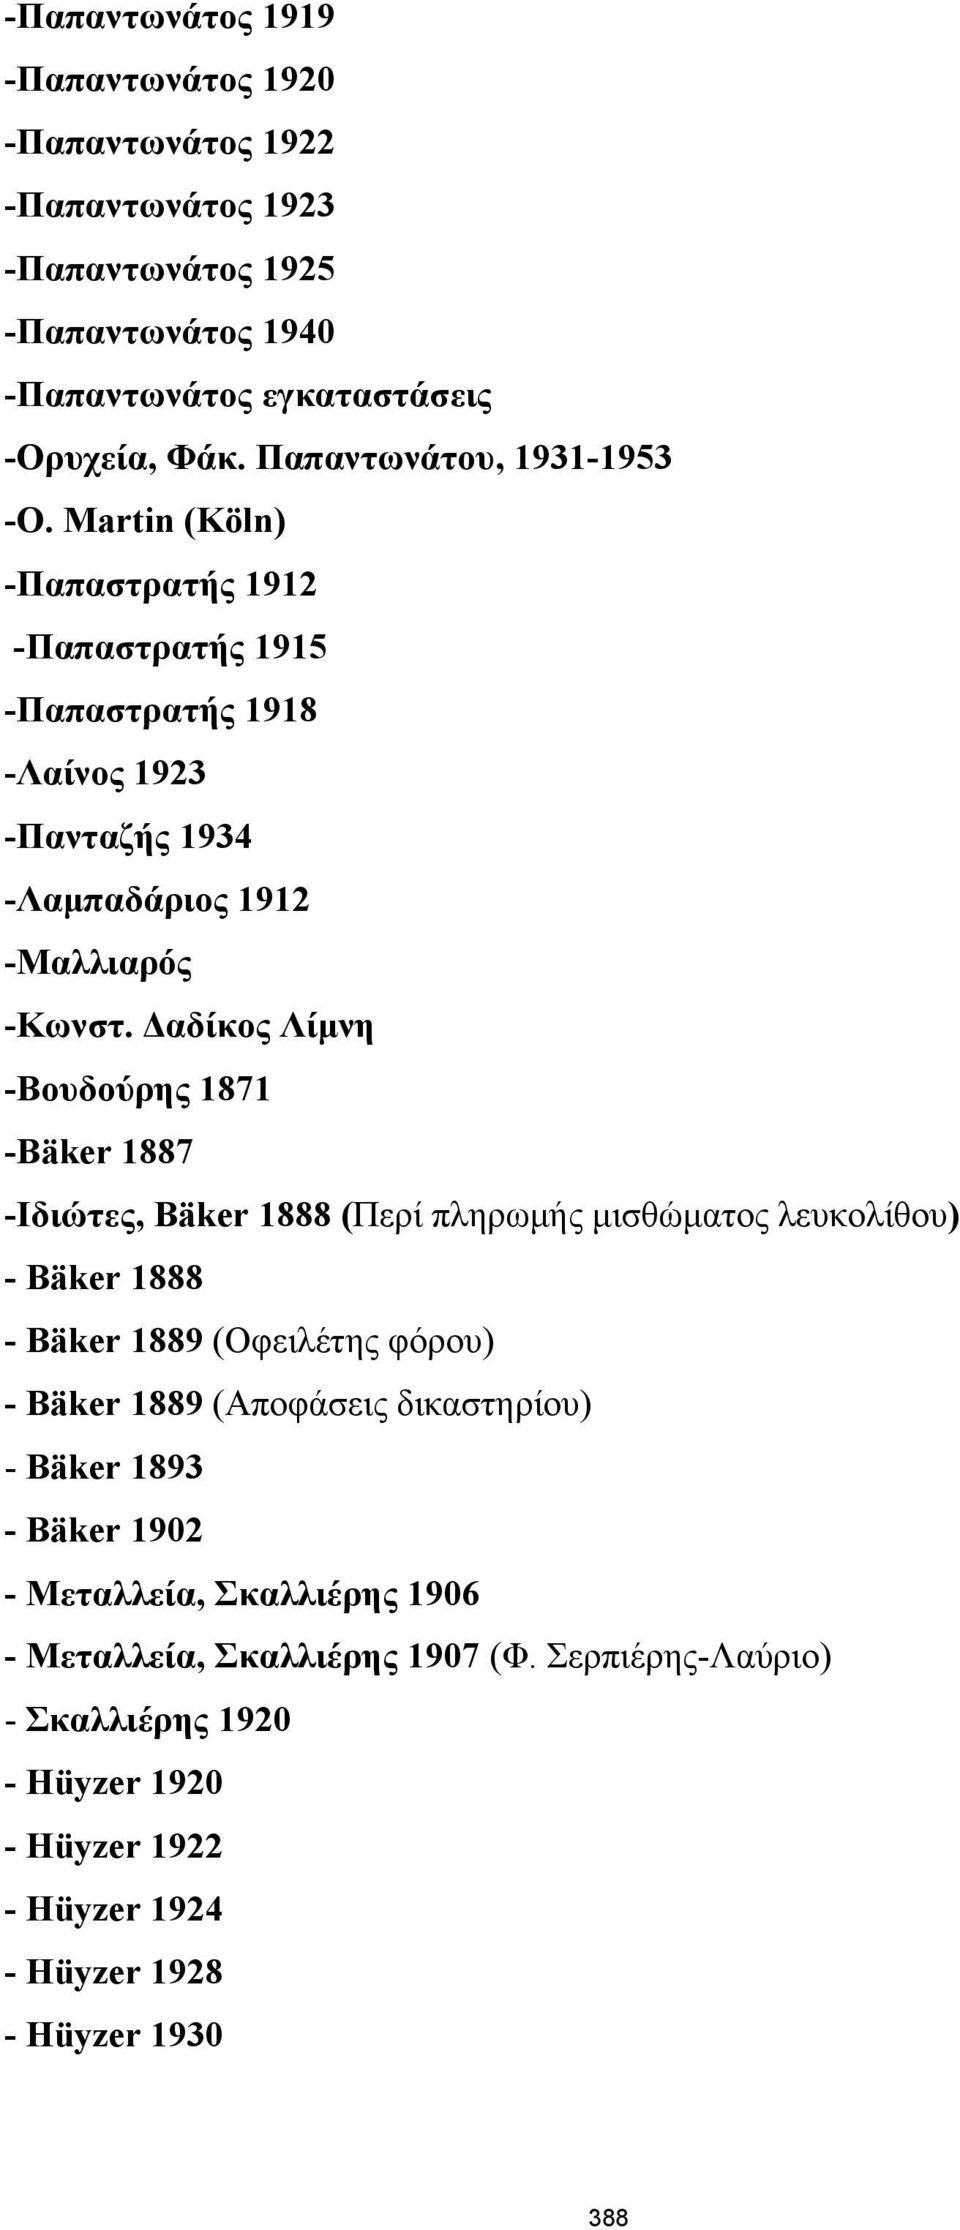 Δαδίκος Λίμνη -Βουδούρης 1871 -Bäker 1887 -Ιδιώτες, Bäker 1888 (Περί πληρωμής μισθώματος λευκολίθου) - Bäker 1888 - Bäker 1889 (Οφειλέτης φόρου) - Bäker 1889 (Αποφάσεις